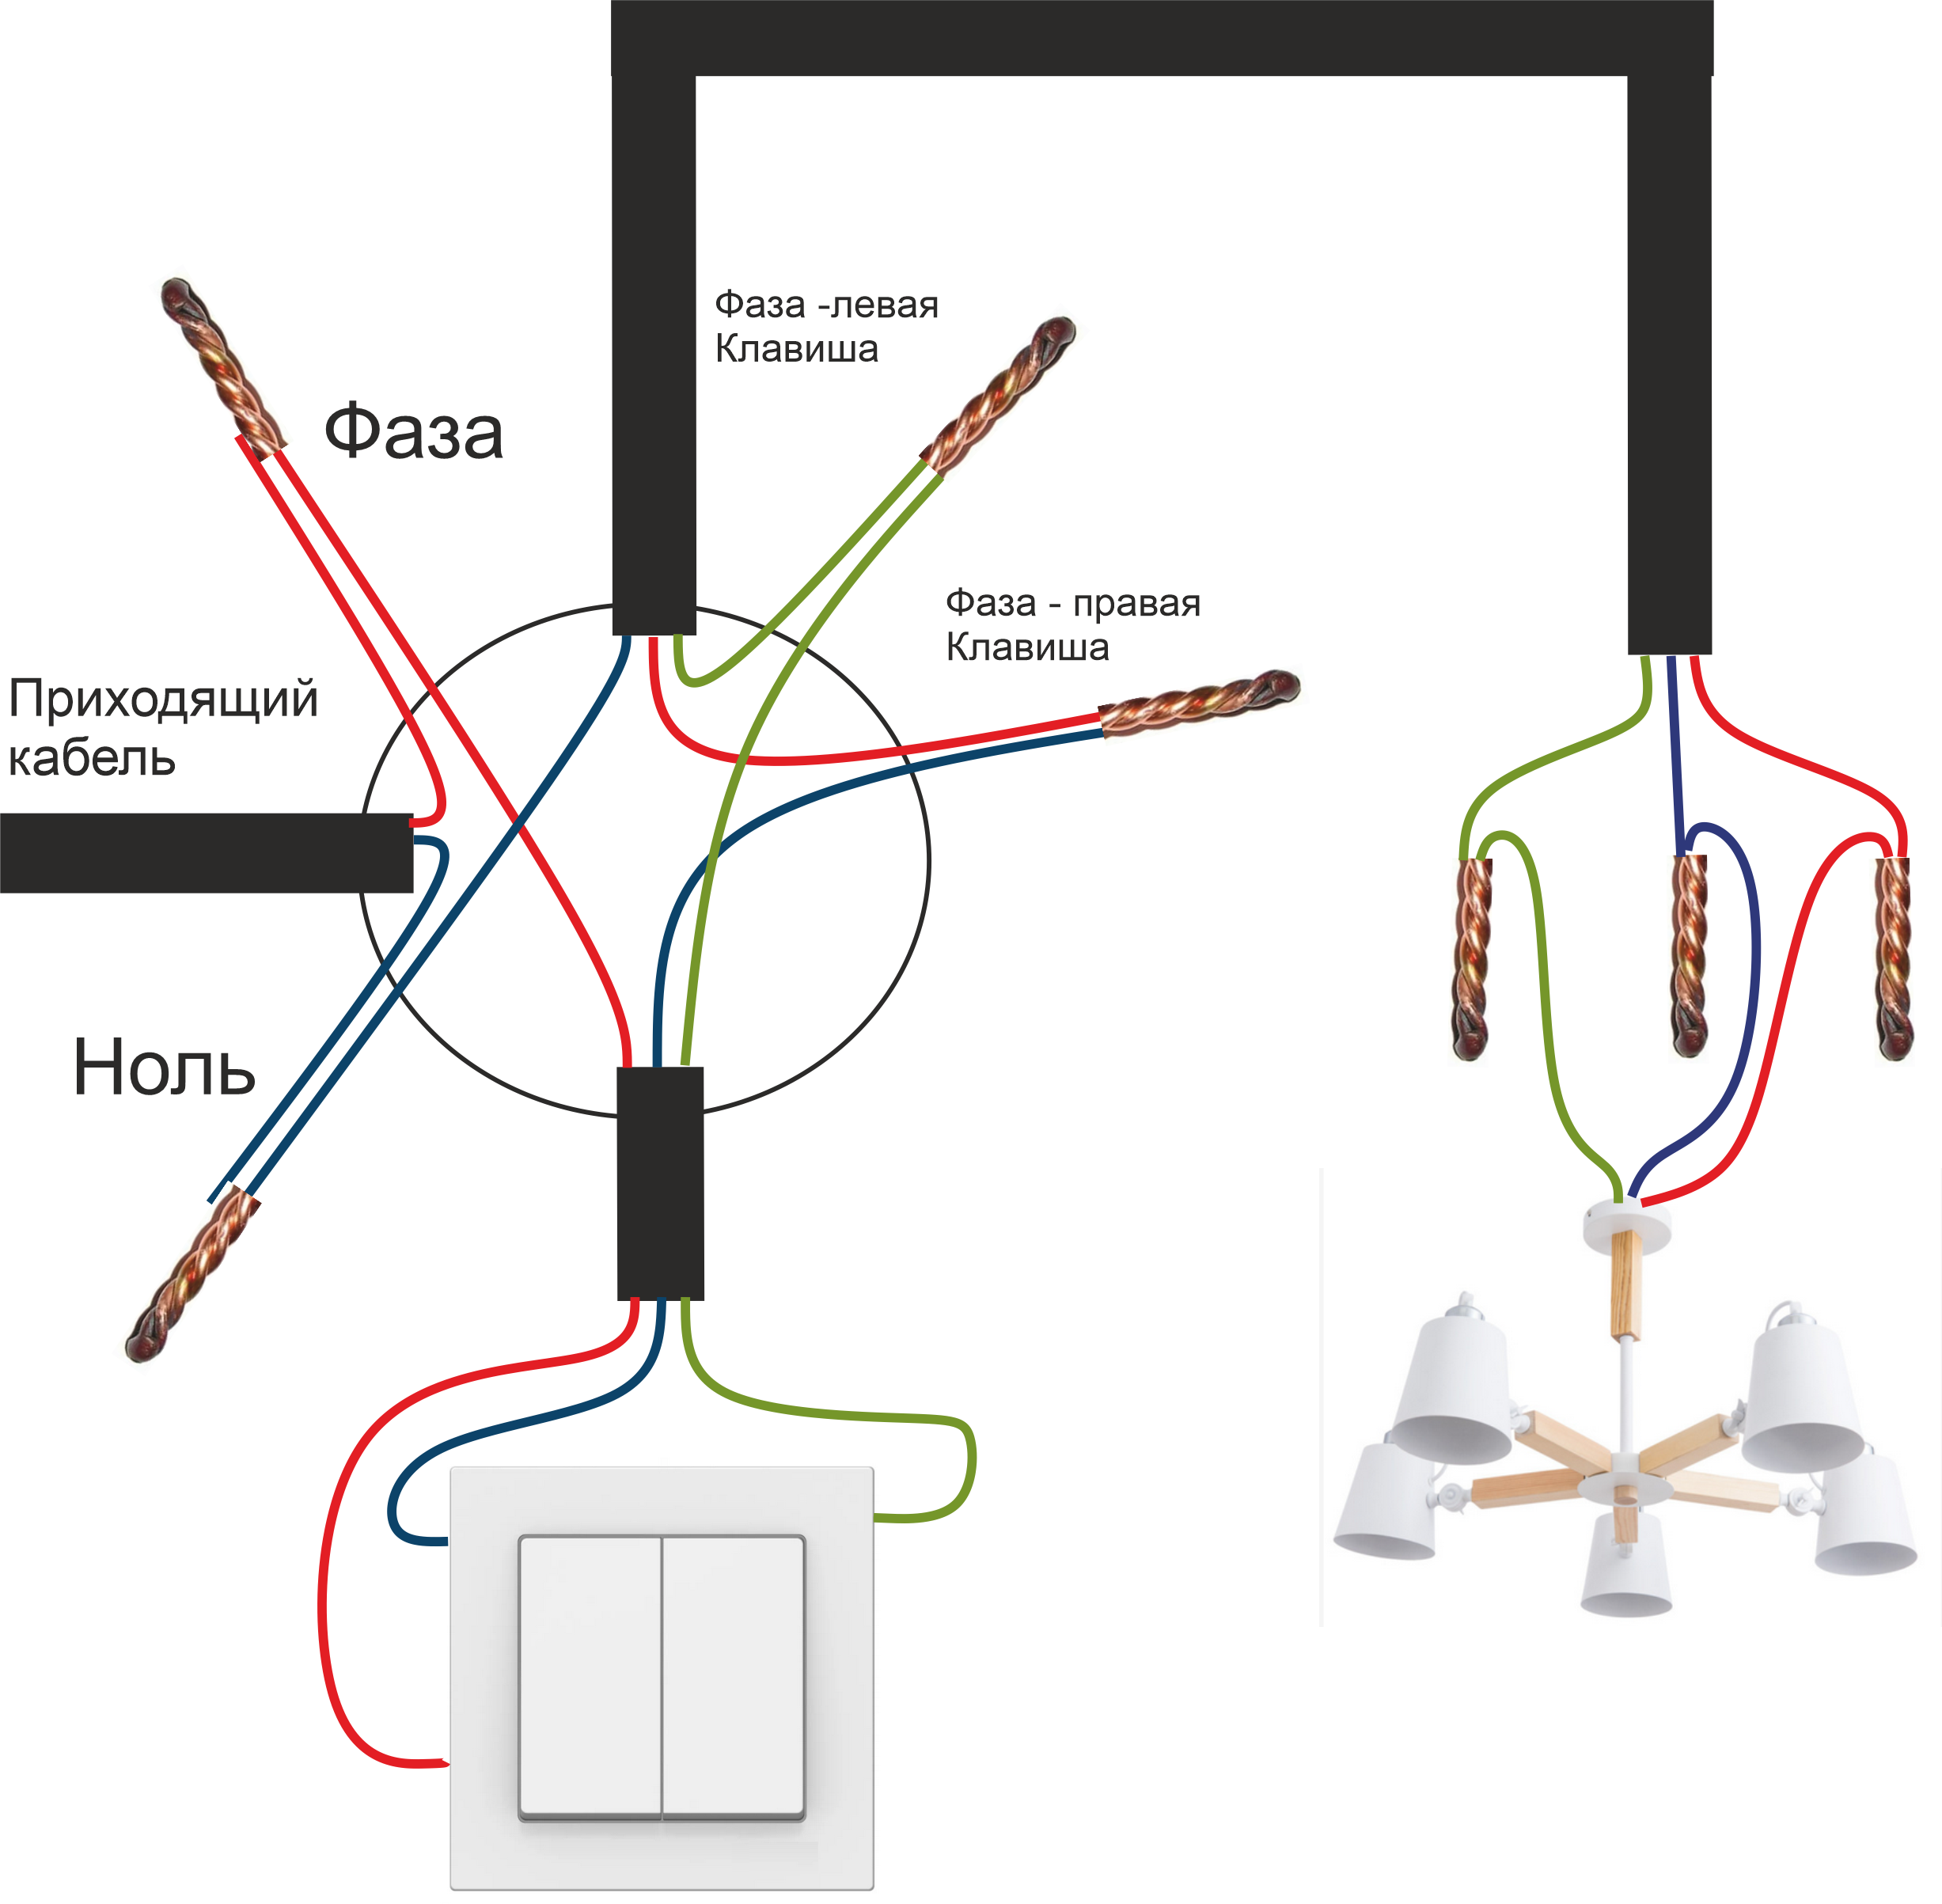 Как подключить выключатель без распределительной коробки. Схема соединения проводов двухклавишного выключателя. Схема подключения двухклавишного выключателя на 2 лампочки. Схема подсоединения двухклавишного выключателя к двум лампочкам. Схема подключения двухклавишного выключателя трехжильным кабелем.